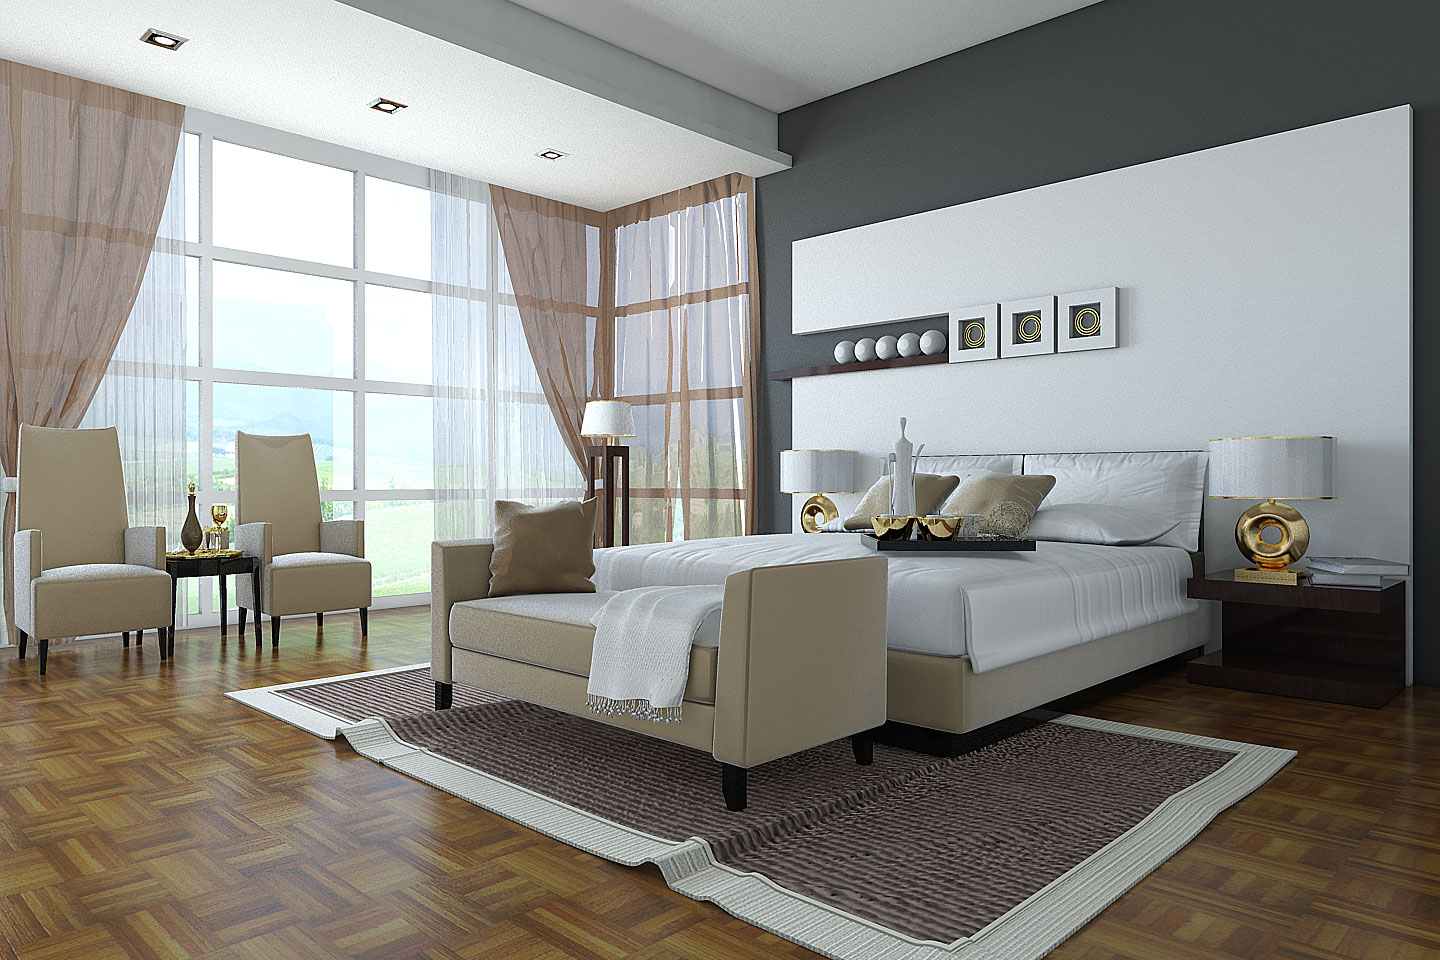 bedroom-furniture-design-28-home-interior-design-ideas